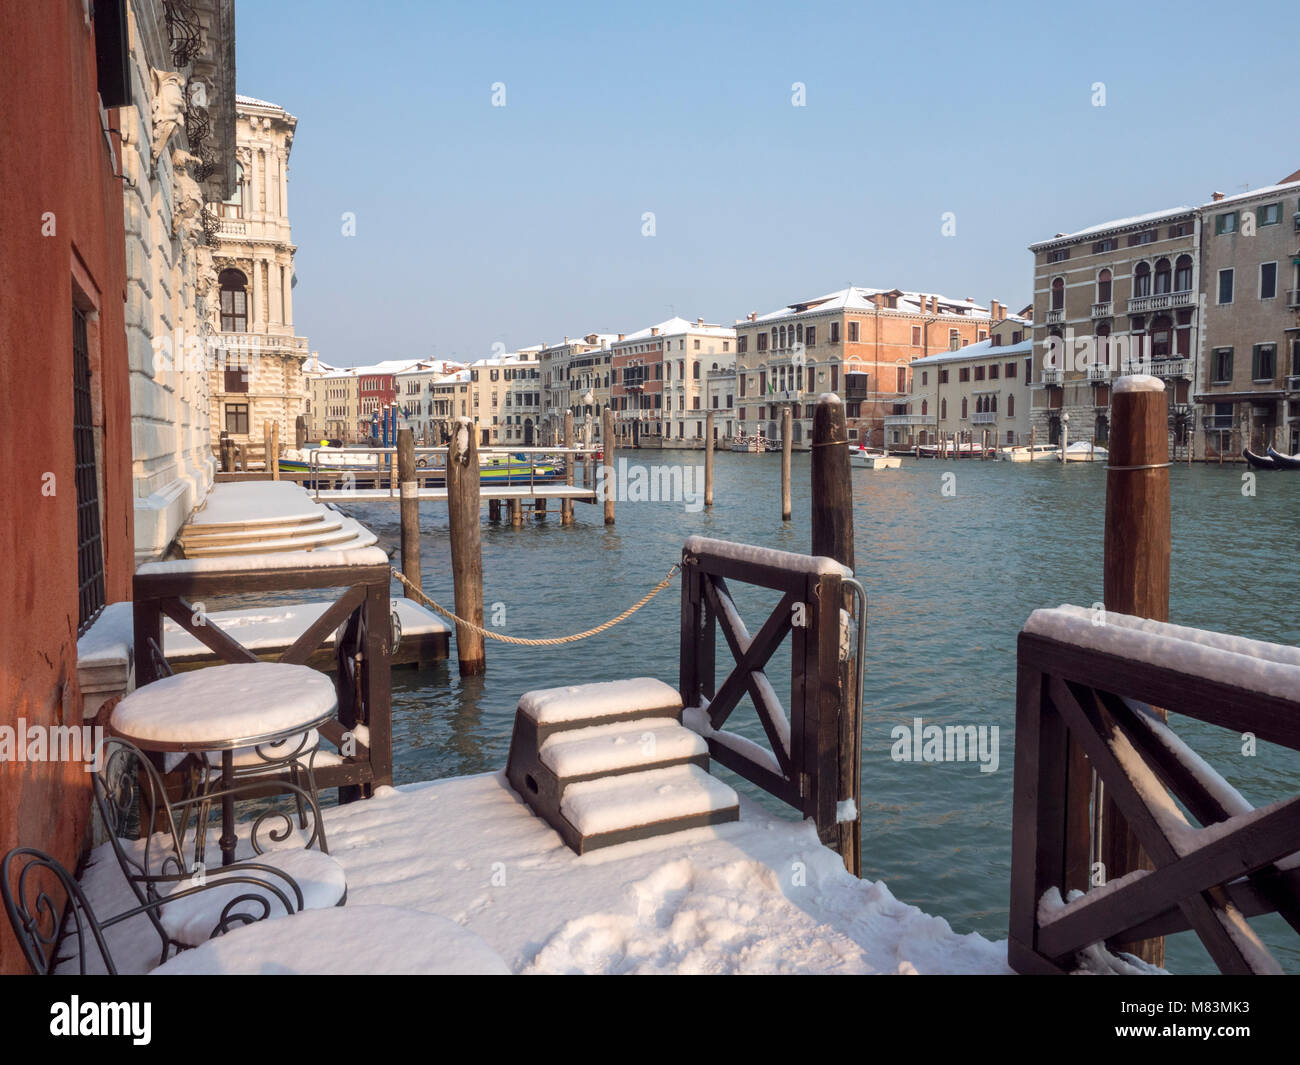 L'Italia, in inverno: la neve su un hotel imbarcadero lungo il Canal Grande a Venezia Foto Stock